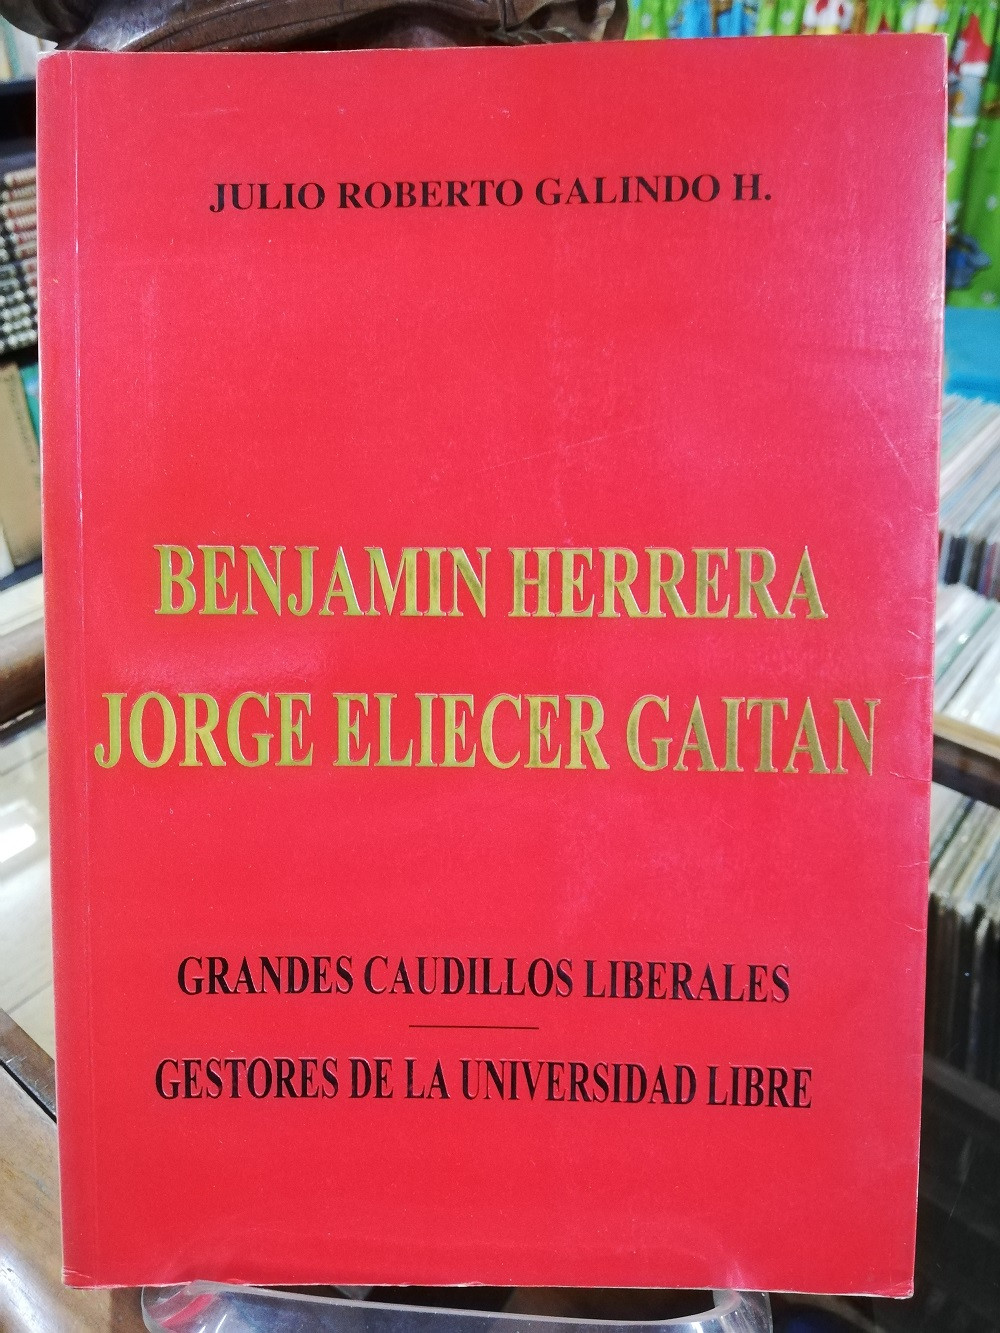 Imagen BENJAMIN HERRERA/JORGE ELICER GAITÁN, GRANDES CAUDILLOS LIBERALES GESTORES DE LA UNIVERSIDAD LIBRE - JULIO ROBERTO GALINDO